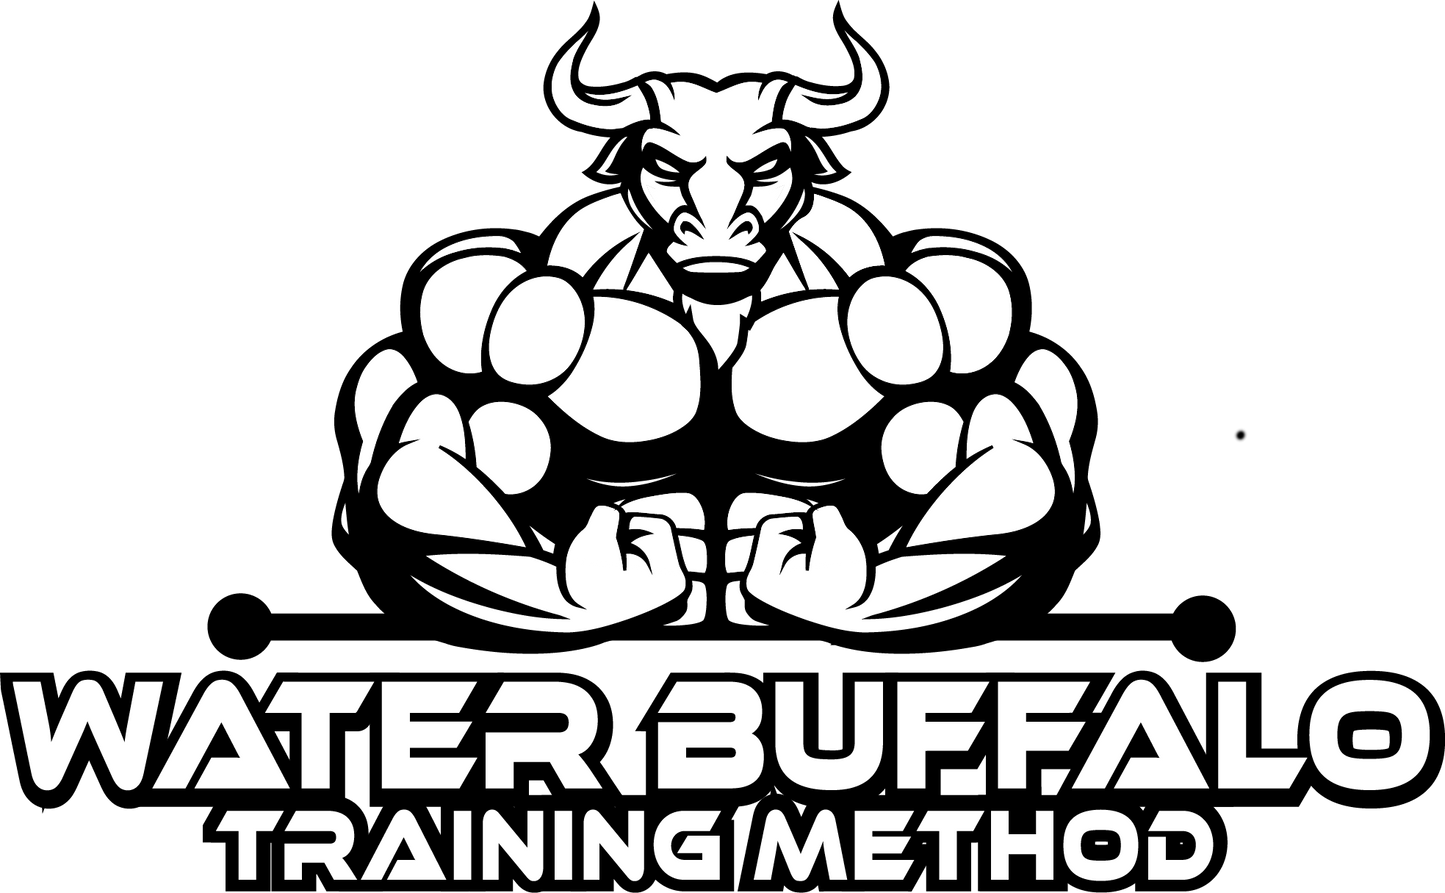 Water Buffalo Training Method: Phase 4